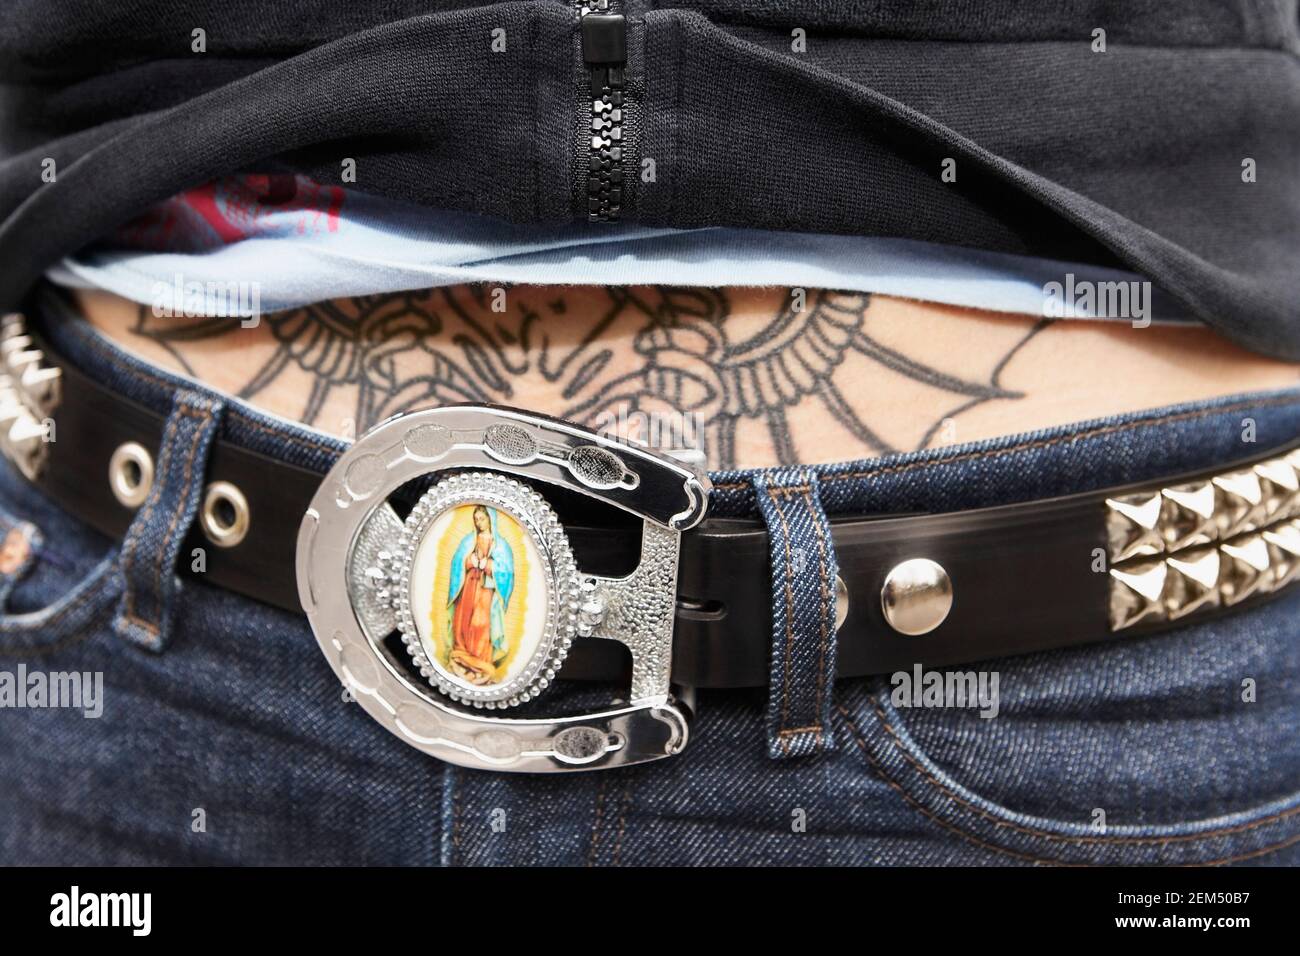 Mittelansicht einer Frau mit Gürtel und Ein Tattoo auf ihrem Bauch  Stockfotografie - Alamy